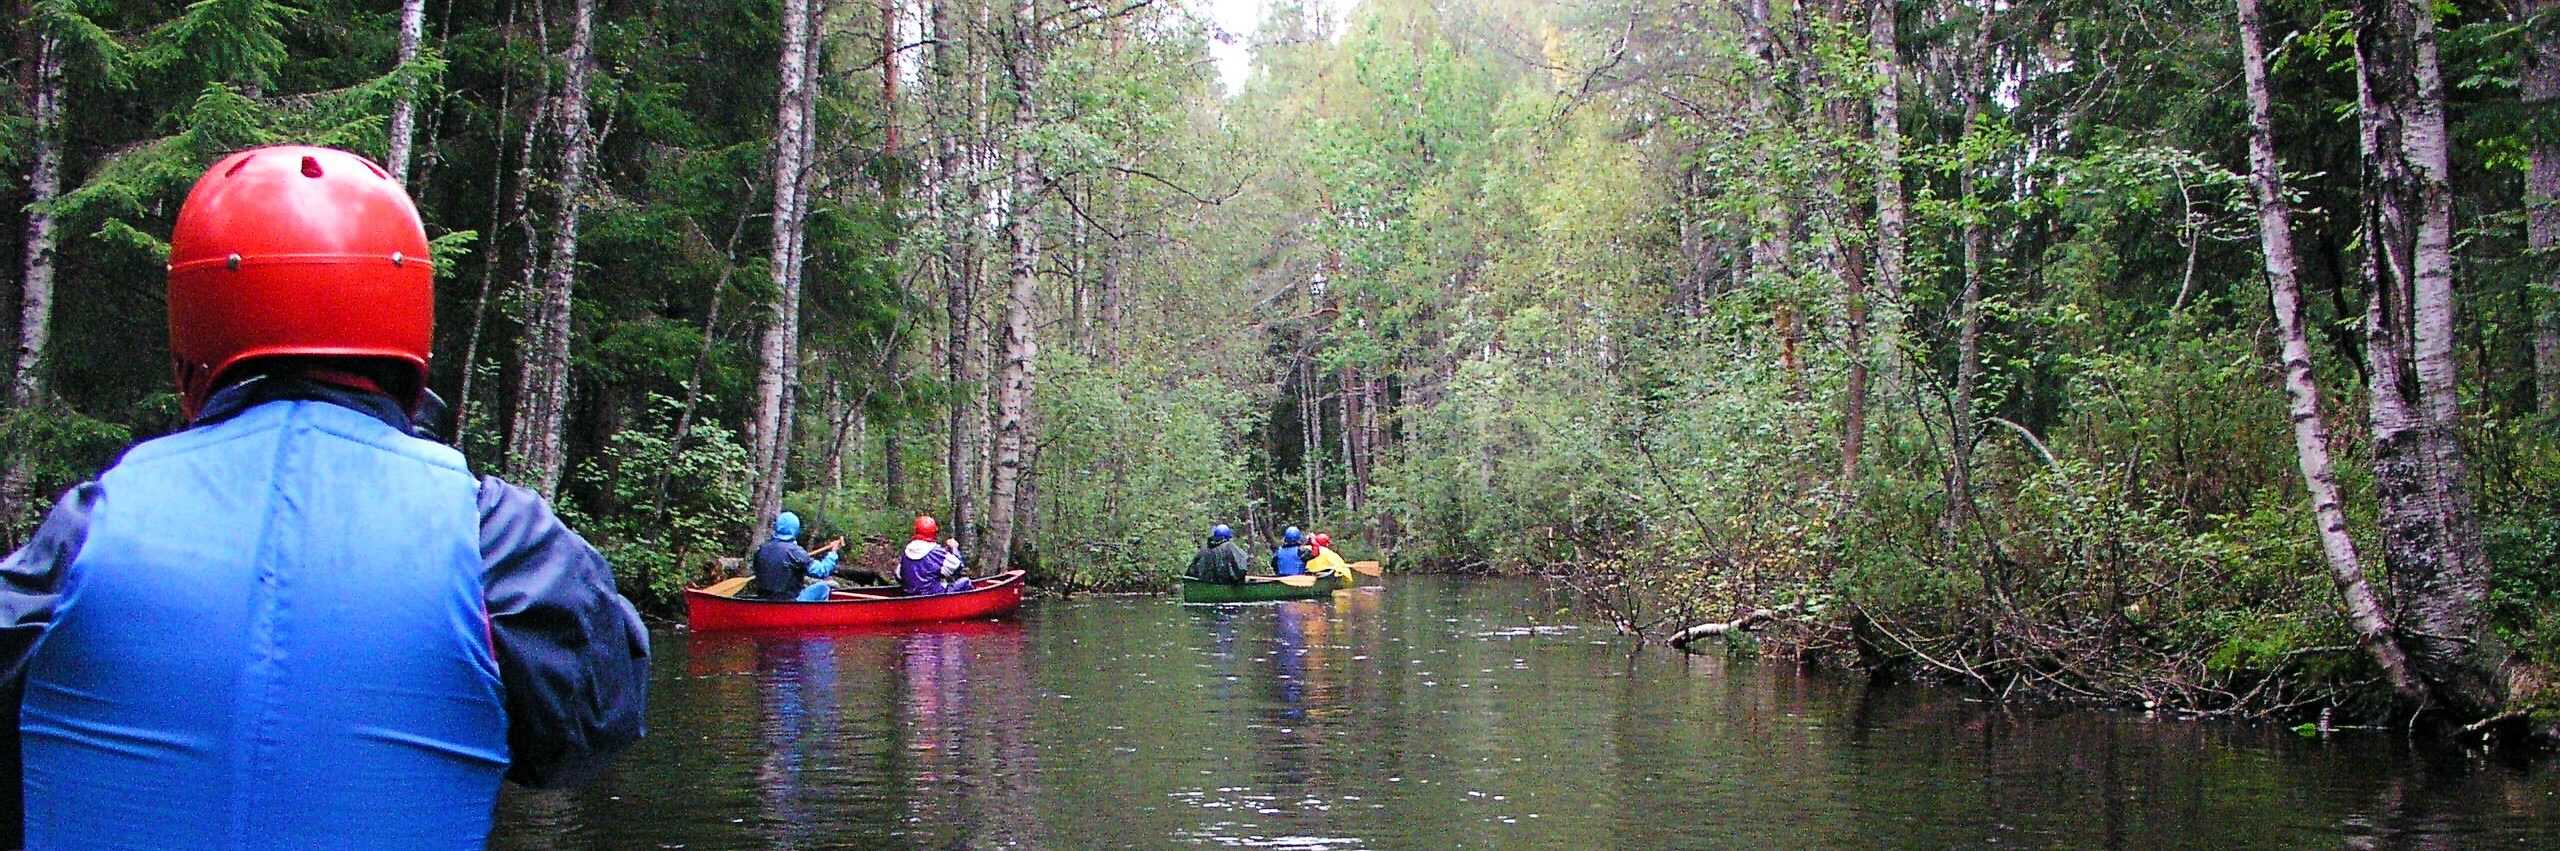 Kesäinen kanootti retki paikallisessa joessa.